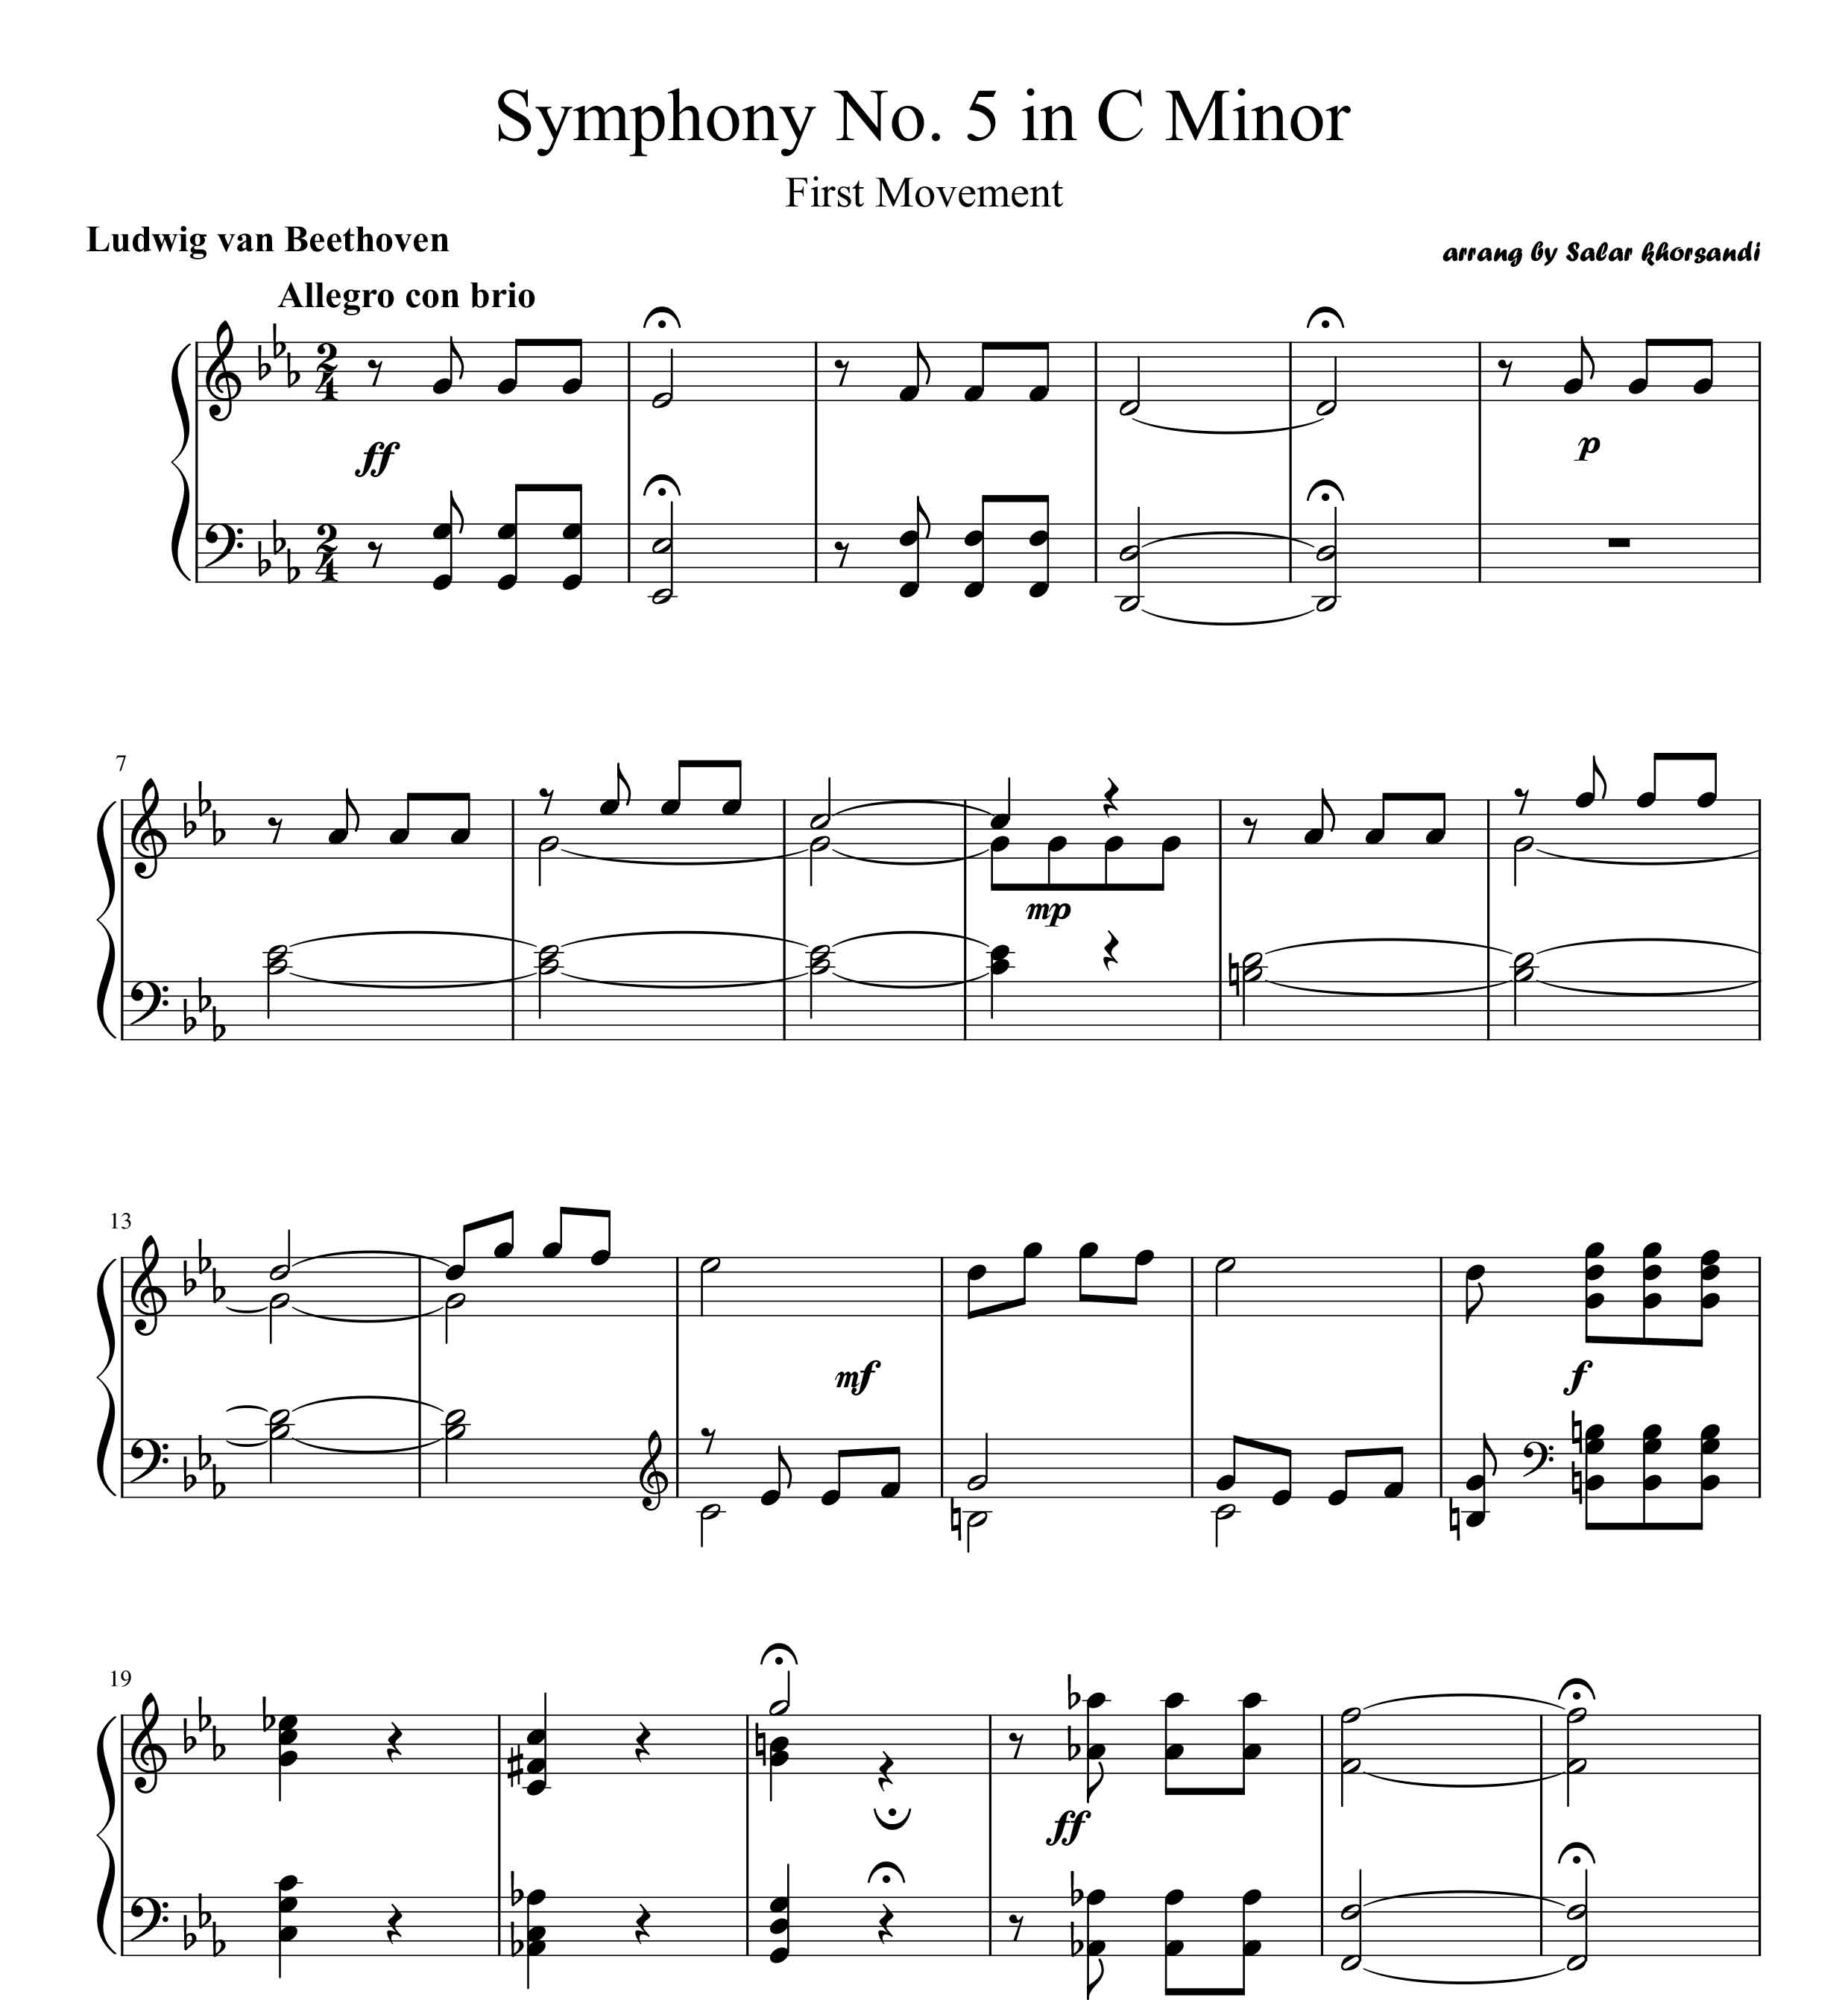 نت ساده شده ی مومان اول سمفونی 5 بتهوون برای پیانو